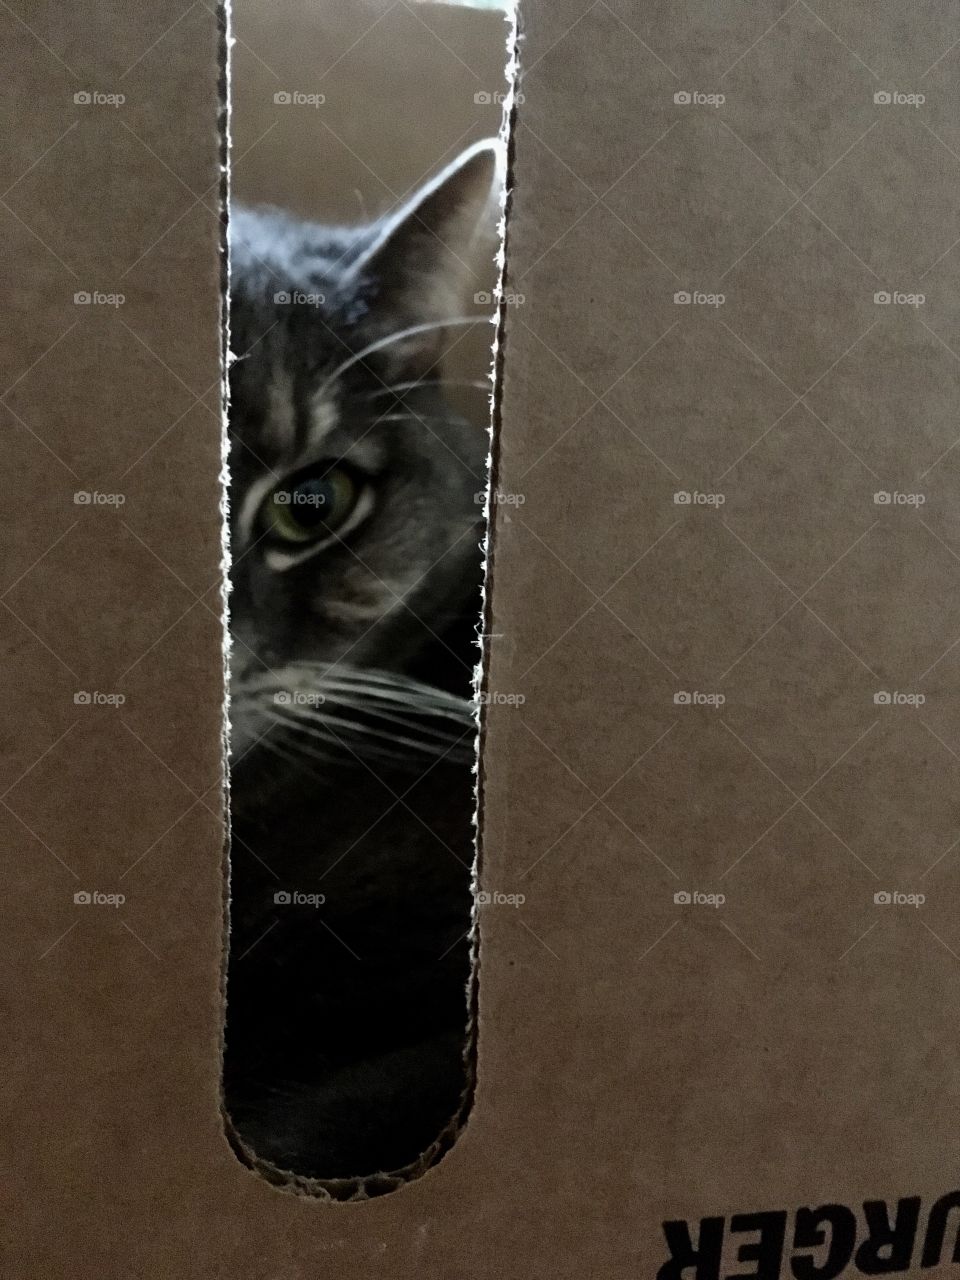 My box, my kingdom!